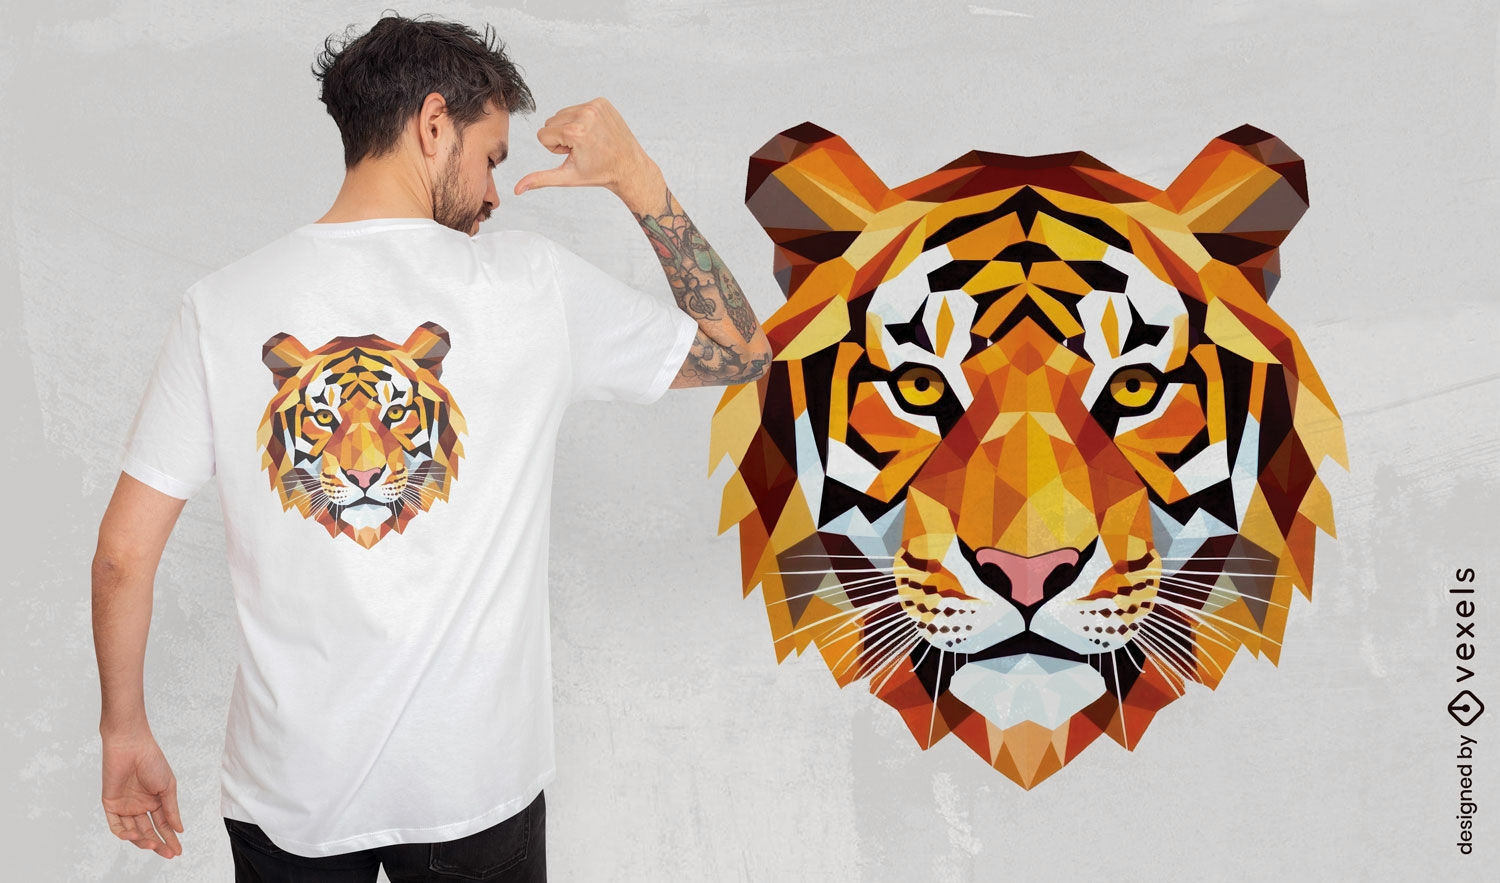 Design geom?trico de camiseta com cara de tigre